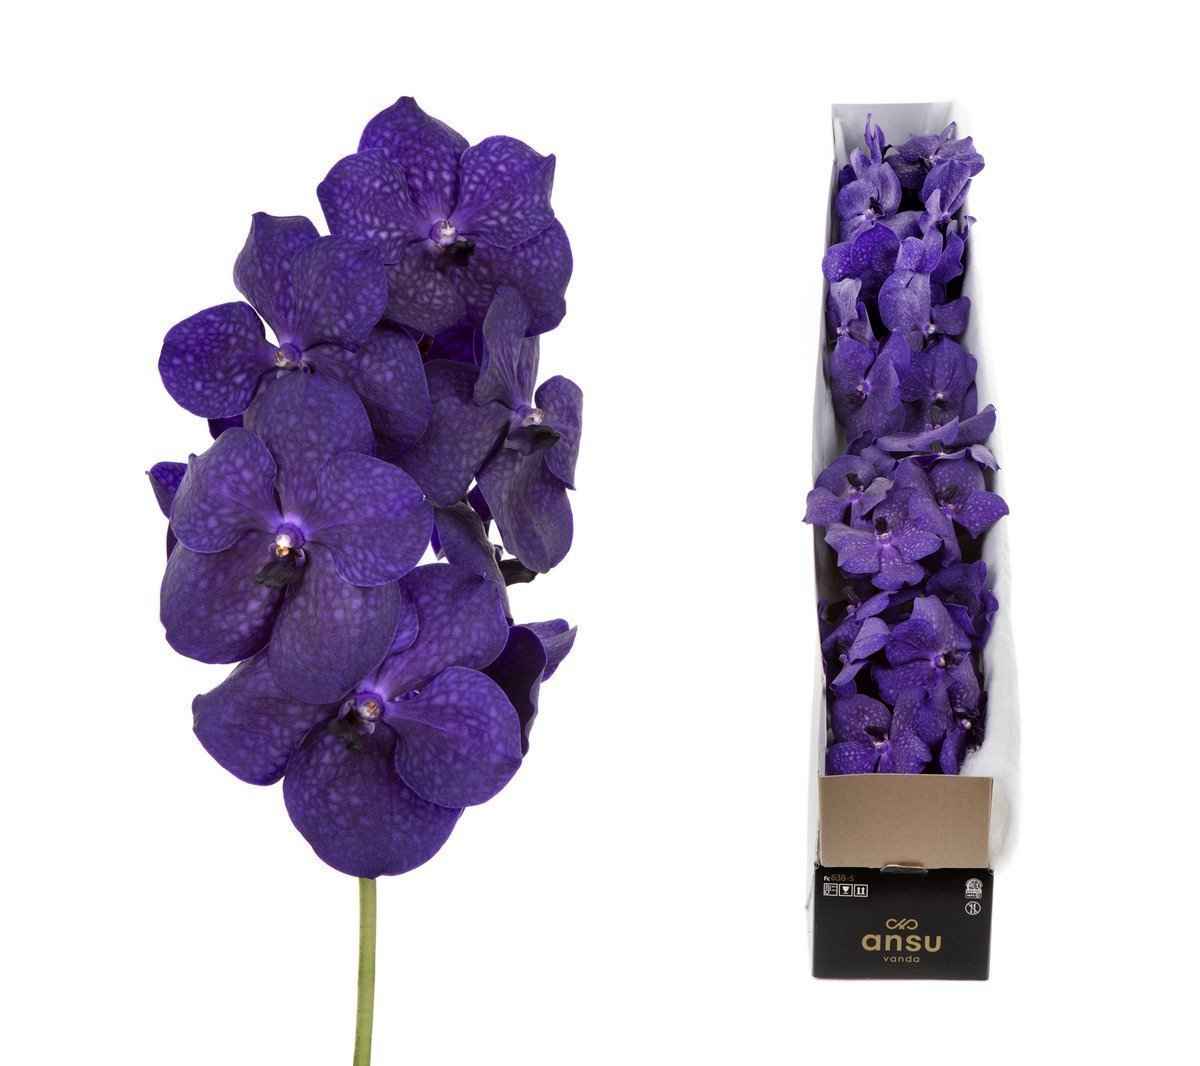 Срезанные цветы оптом Vanda tayanee maxi deep blue per stem от 4шт из Голландии с доставкой по России